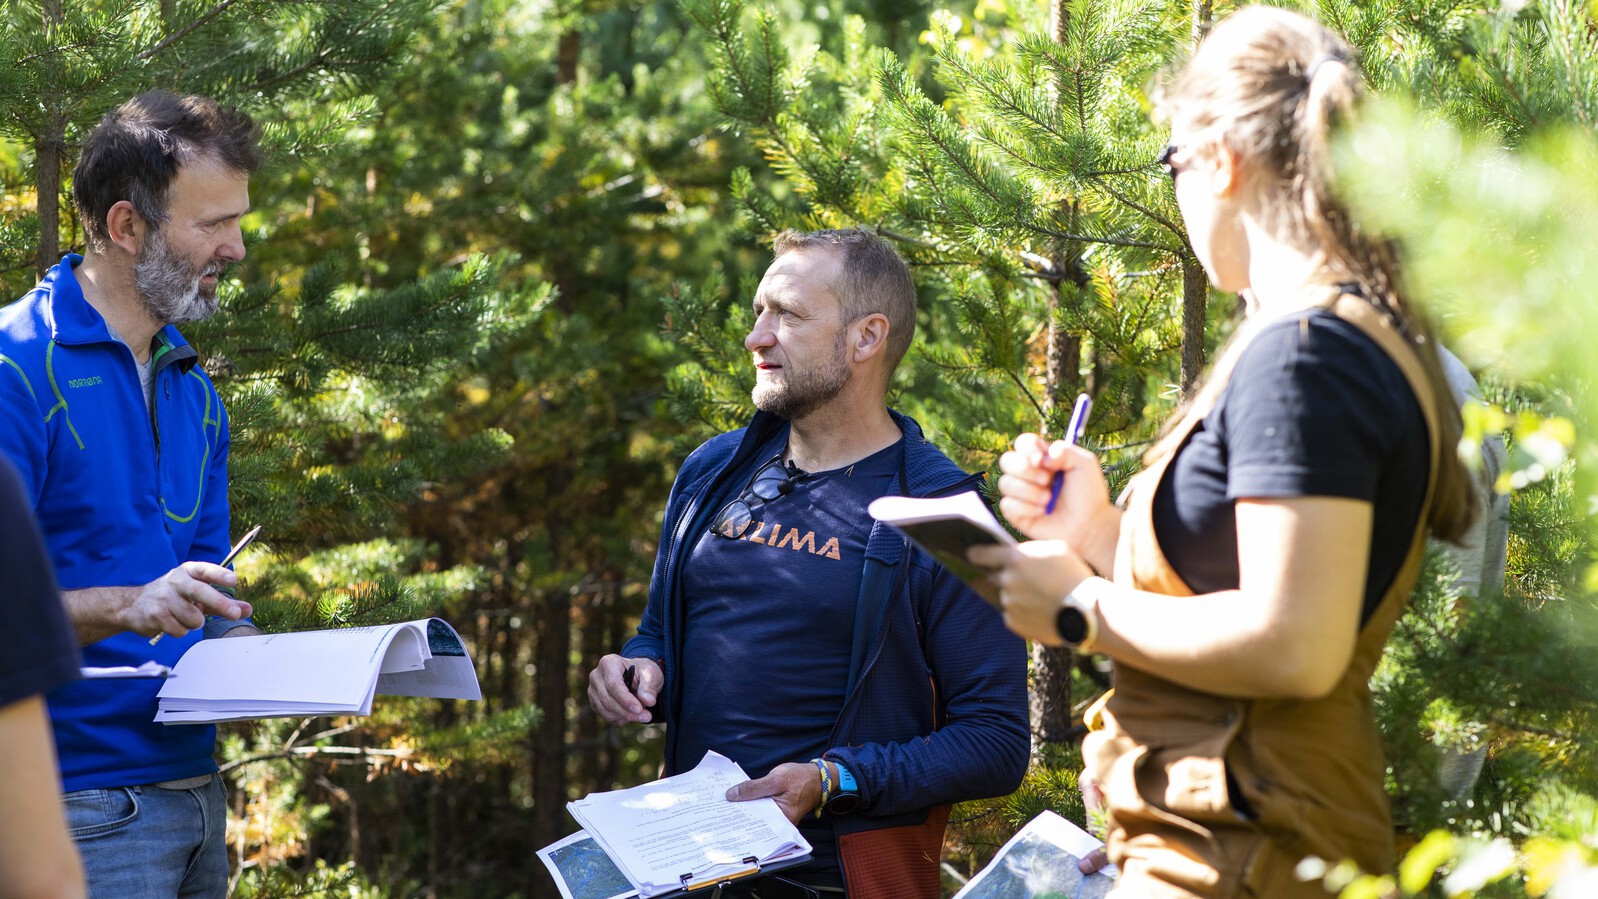 En mannlige ansatt snakker sammen med en mannlig og en kvinnelig student ute i skogen. Alle har papirer i hendene. De står i en furuskog.